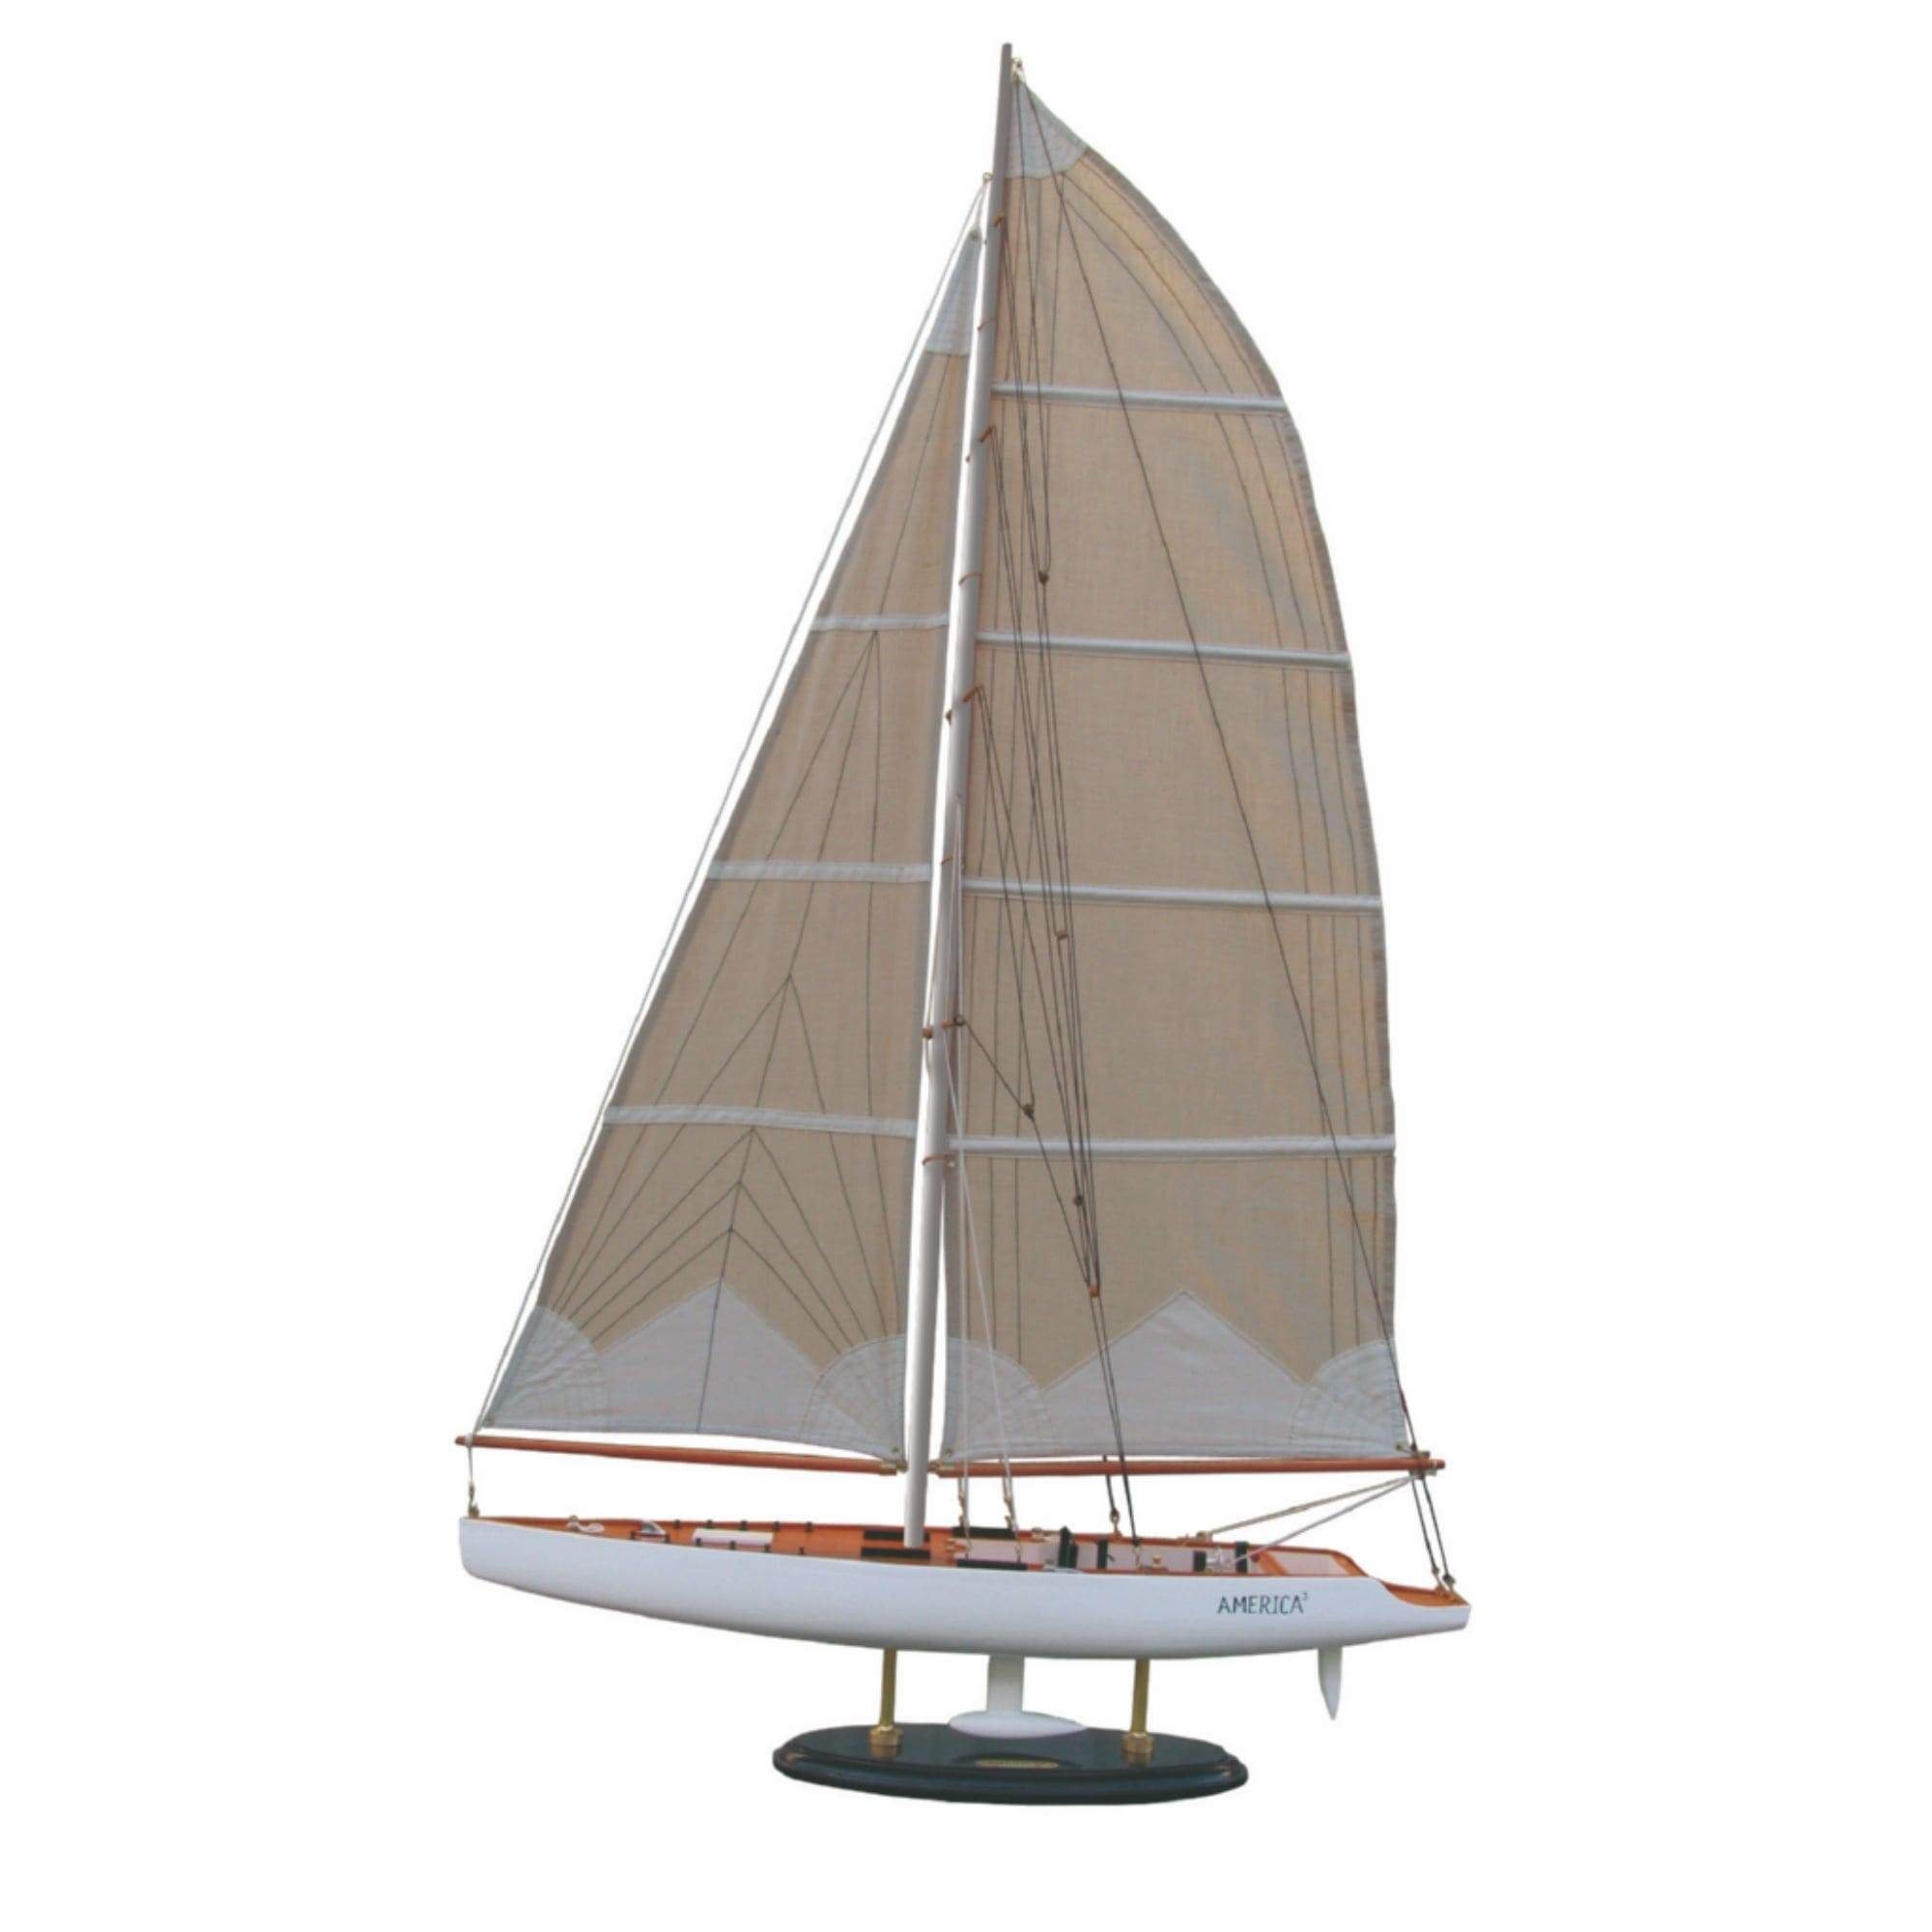 America – Model Boat – L:31cm – H:37cm